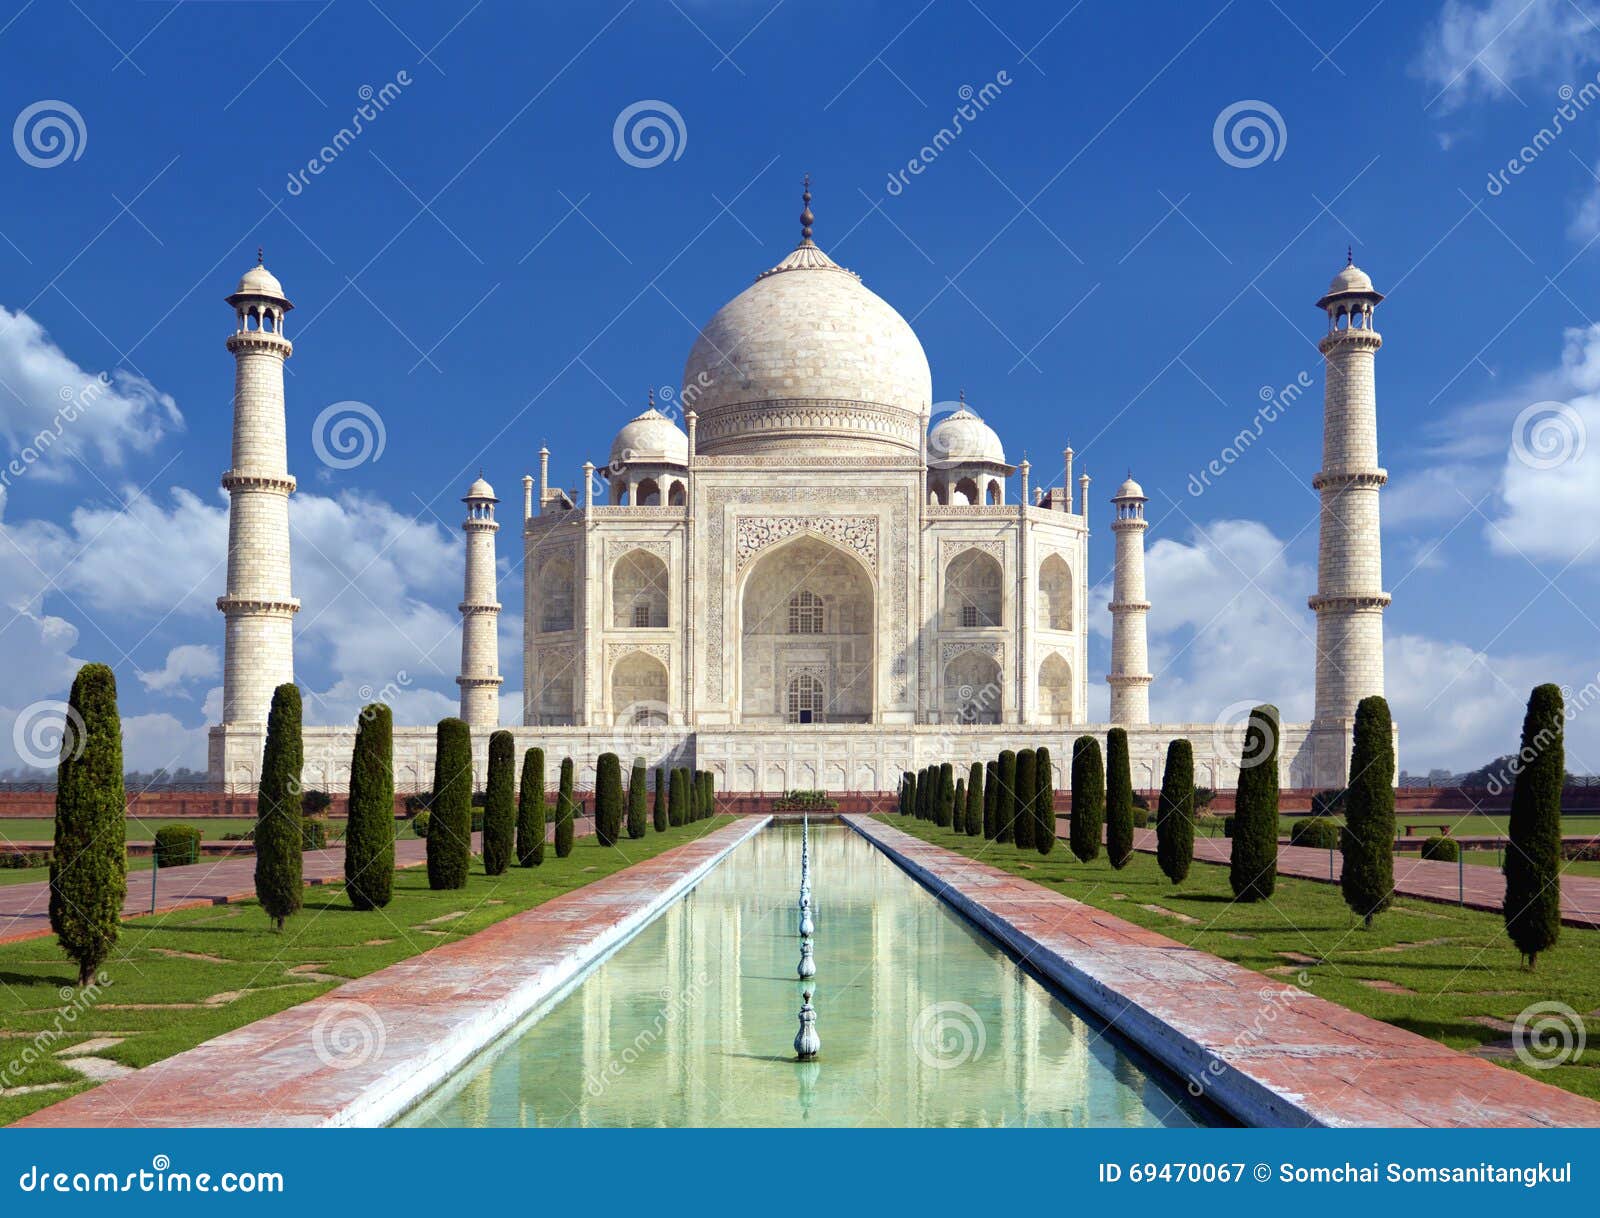 taj mahal, agra, india - monument of love in blue sky